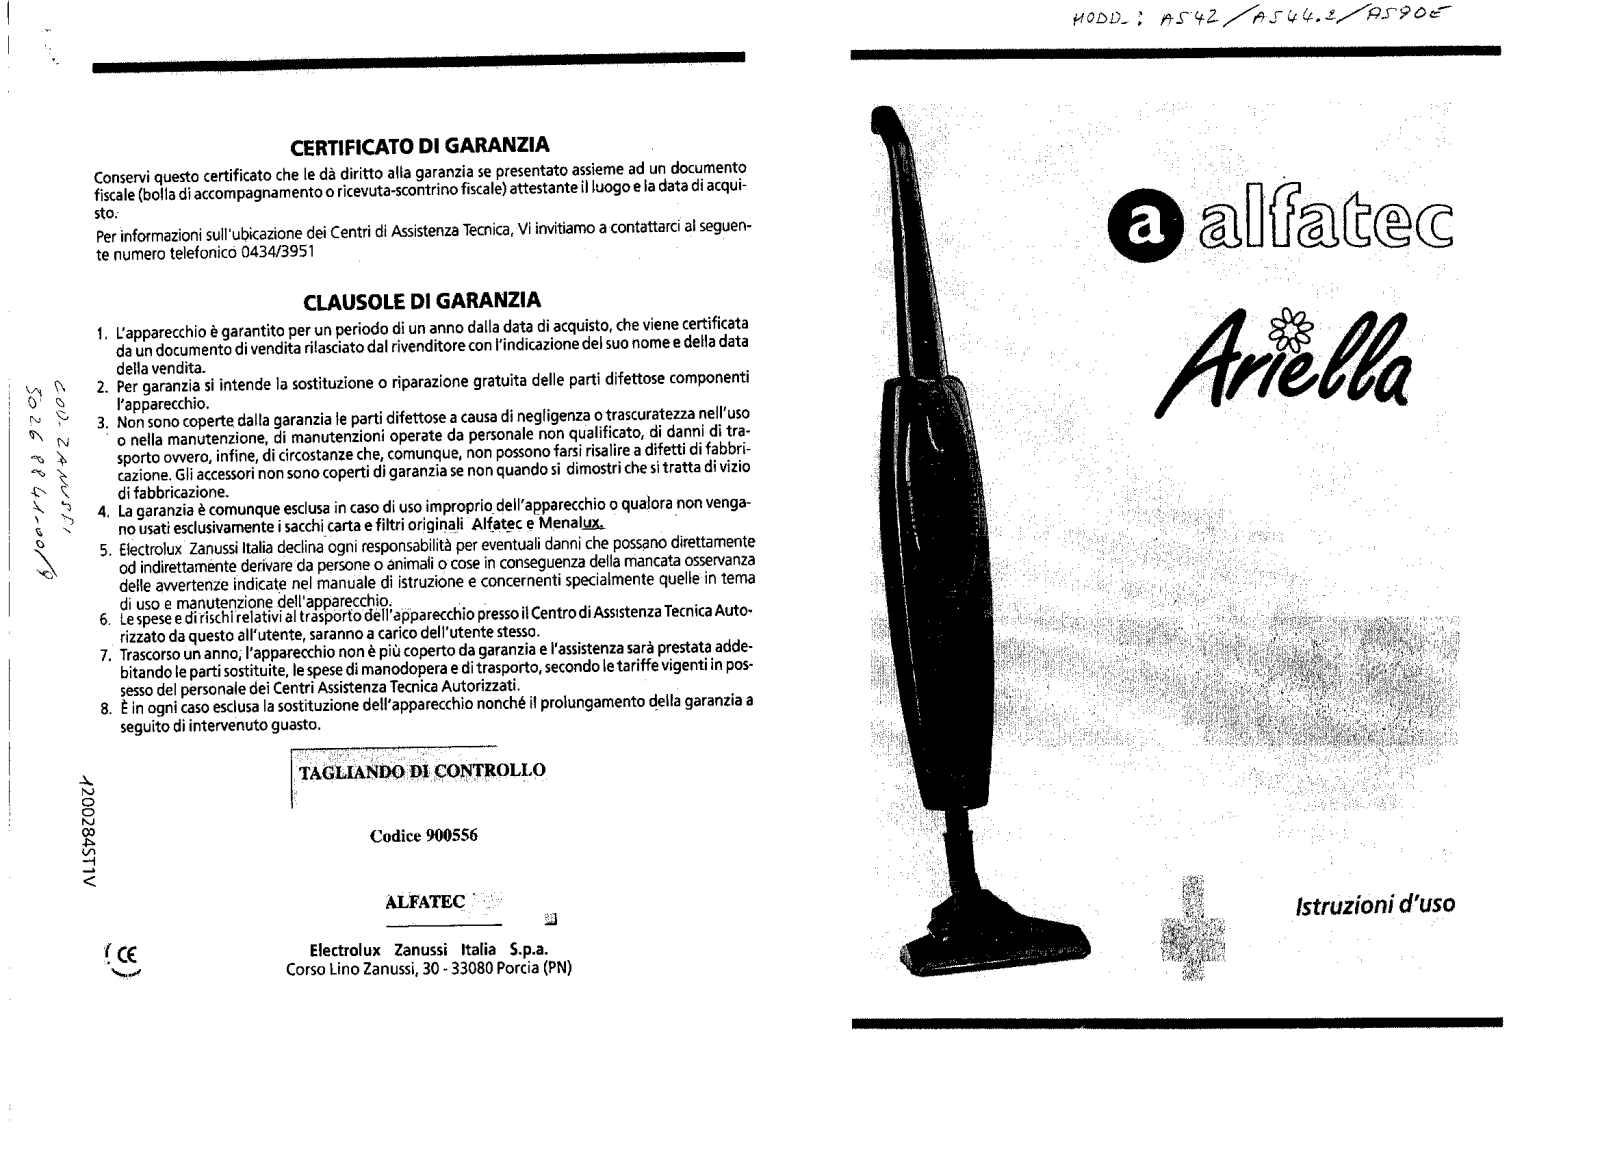 Alfatec AS90E, AS85ARIELLA, AS100EARIELLA, AS42, AS75ARIELLA Manual